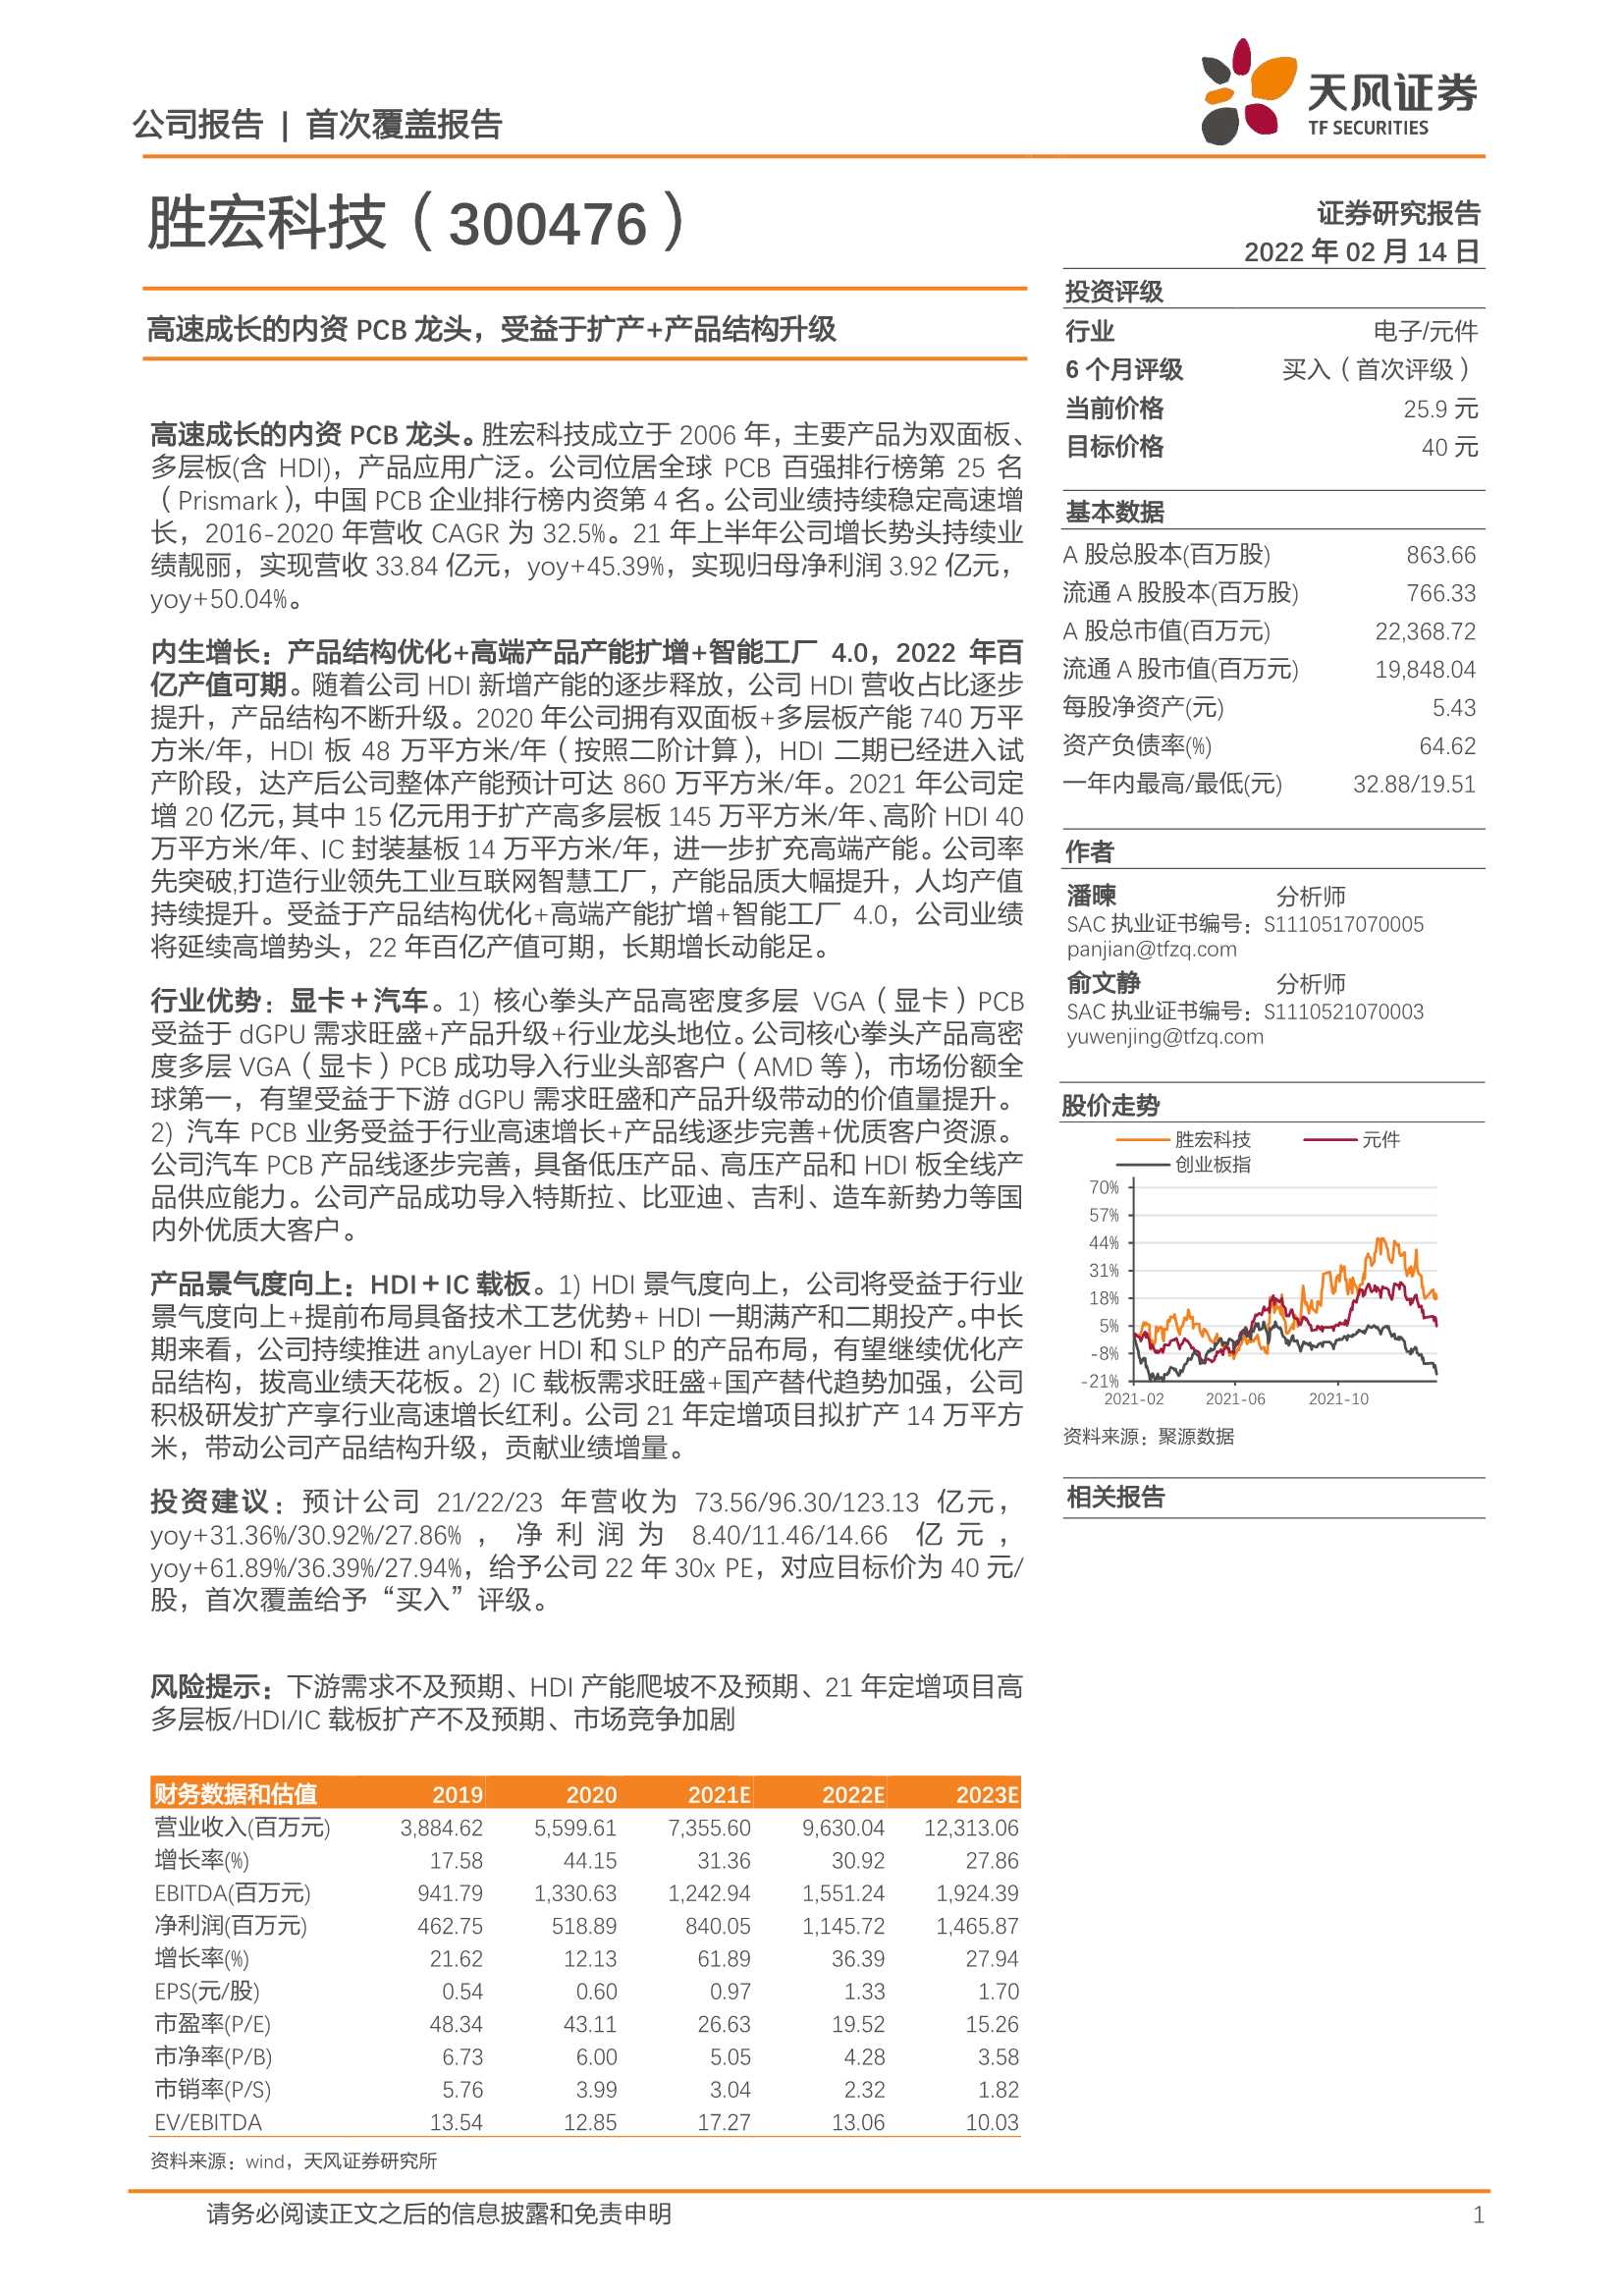 天风证券-胜宏科技-300476-高速成长的内资PCB龙头，受益于扩产 产品结构升级-20220214-29页